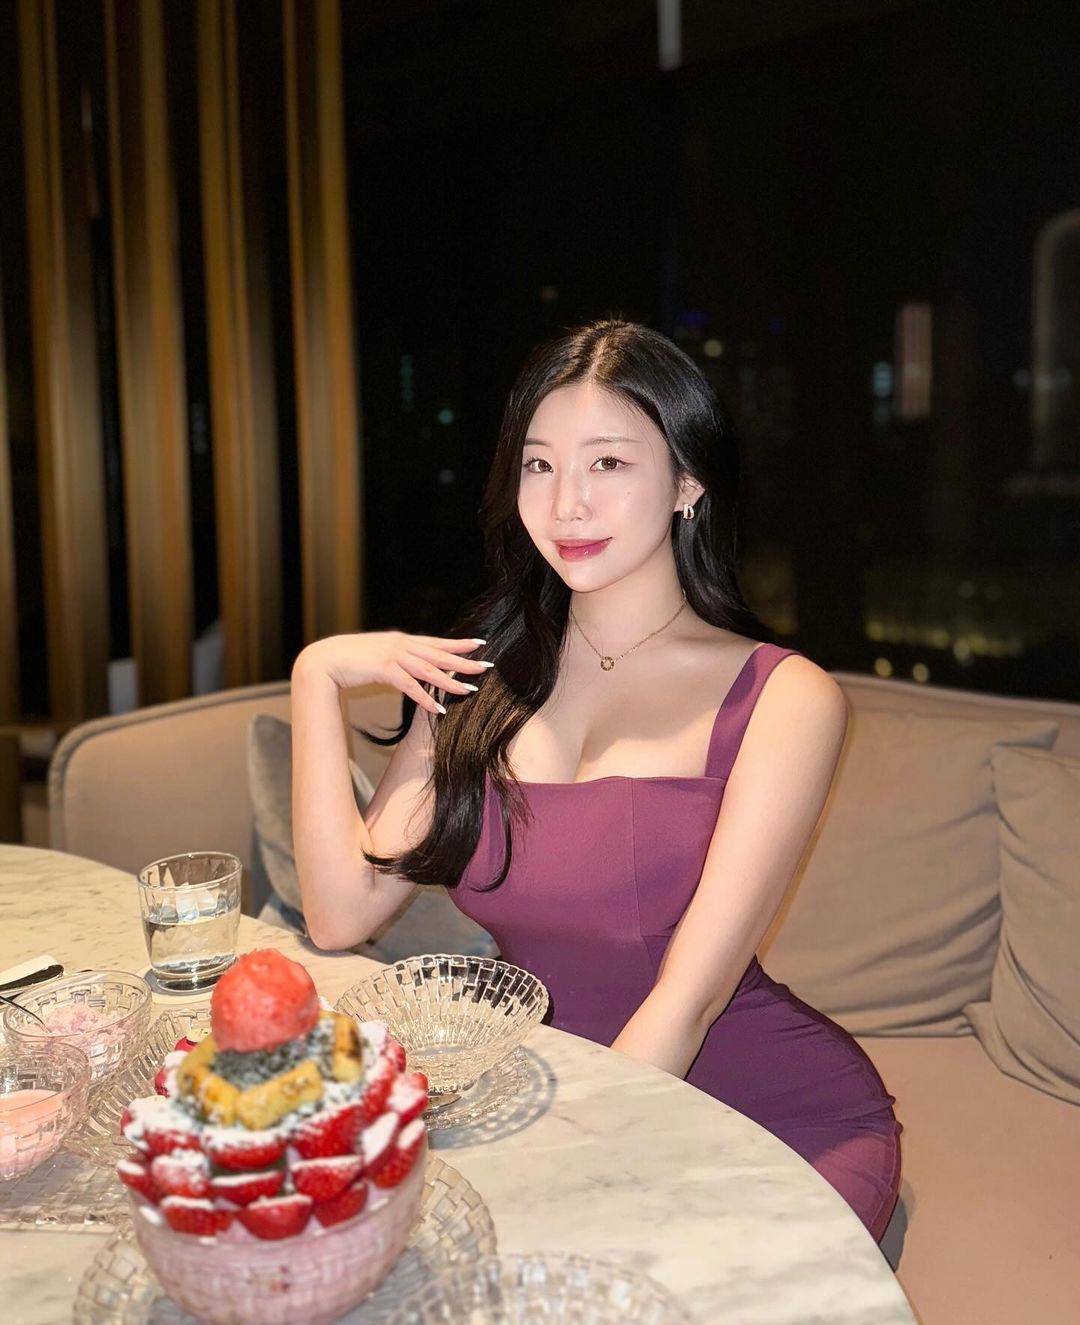 Jeon Yebin hoàn toàn nổi bật trong bữa tiệc với mẫu đầm ôm sát body. Thiết kế làm nổi bật vóc dáng&nbsp;"đồng hồ cát" của nữ người mẫu.